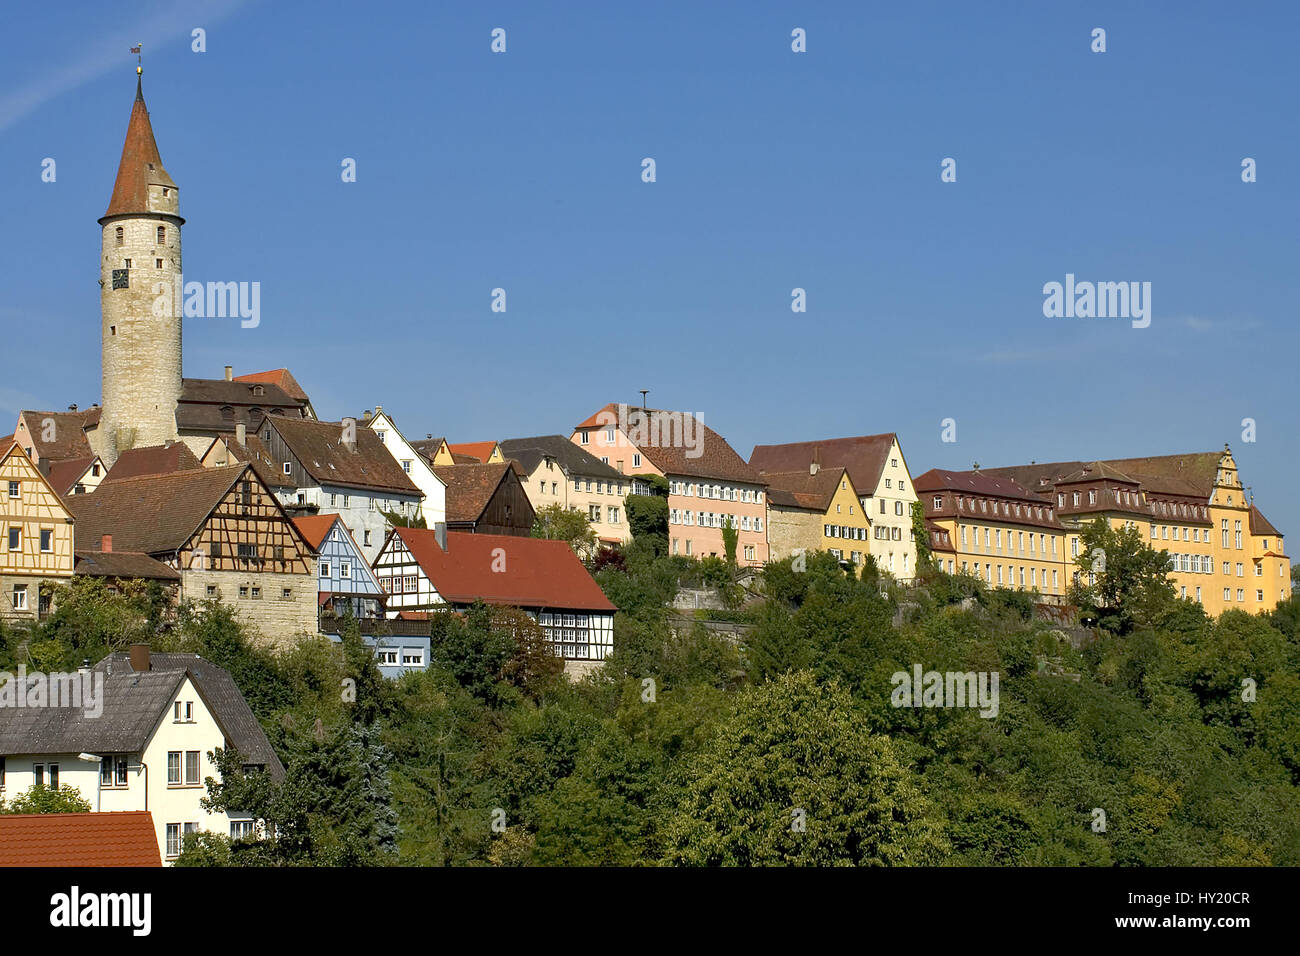 Altstadt Kirchberg an der Jagst Stock Photo